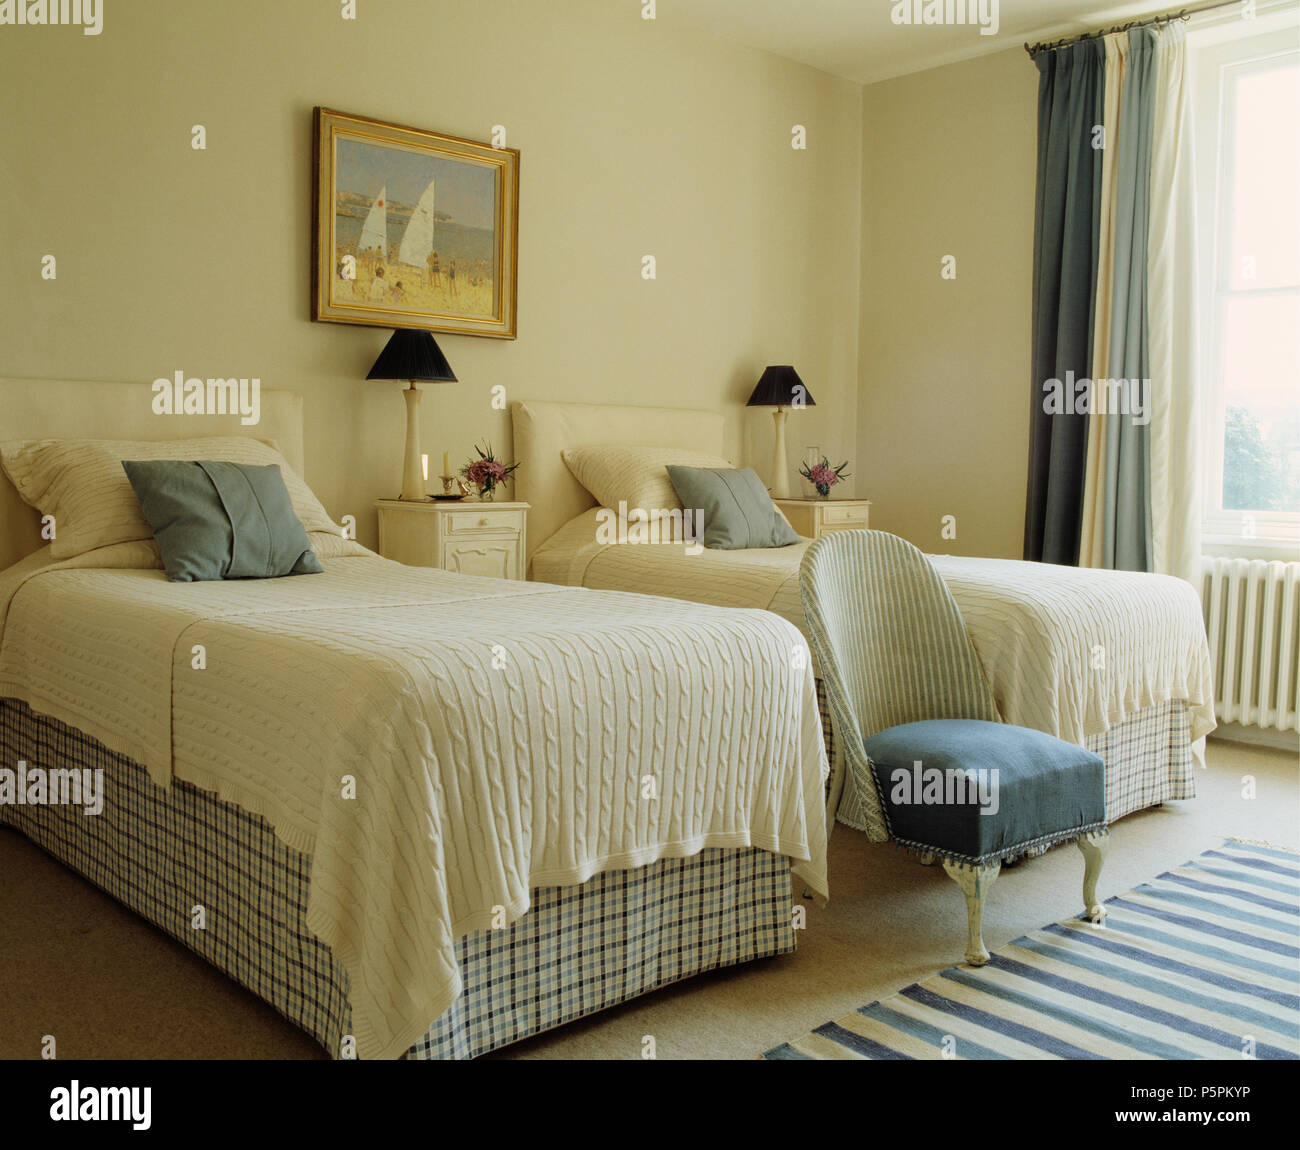 Mantas de lana crema sobre camas con marcada vallances en dormitorio con una crema vintage Lloyd Loom silla Foto de stock